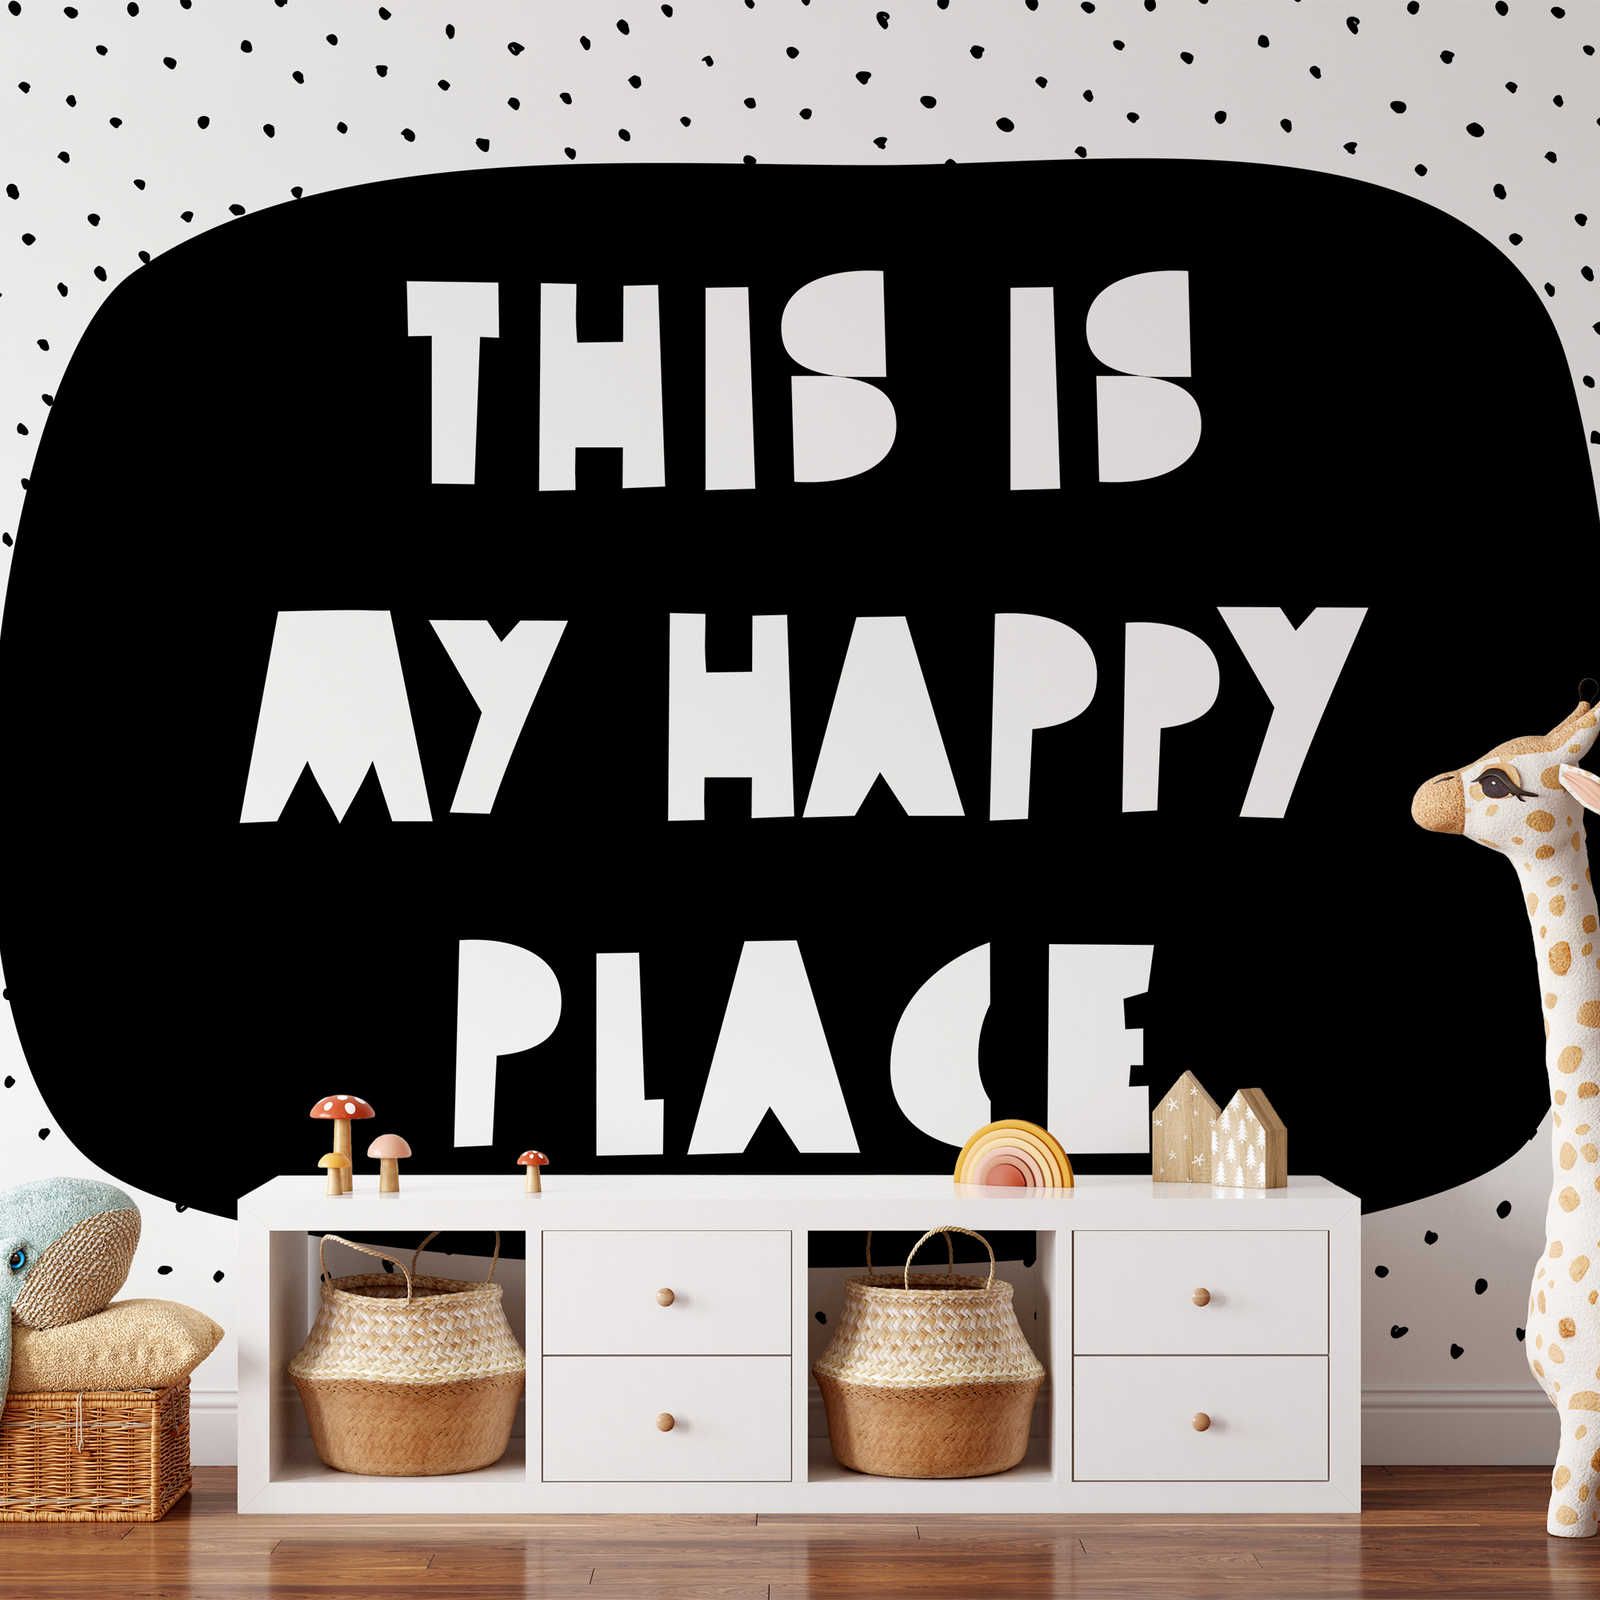 Digital behang voor kinderkamer met opschrift "This is my happy place" - Glad & mat vlies
